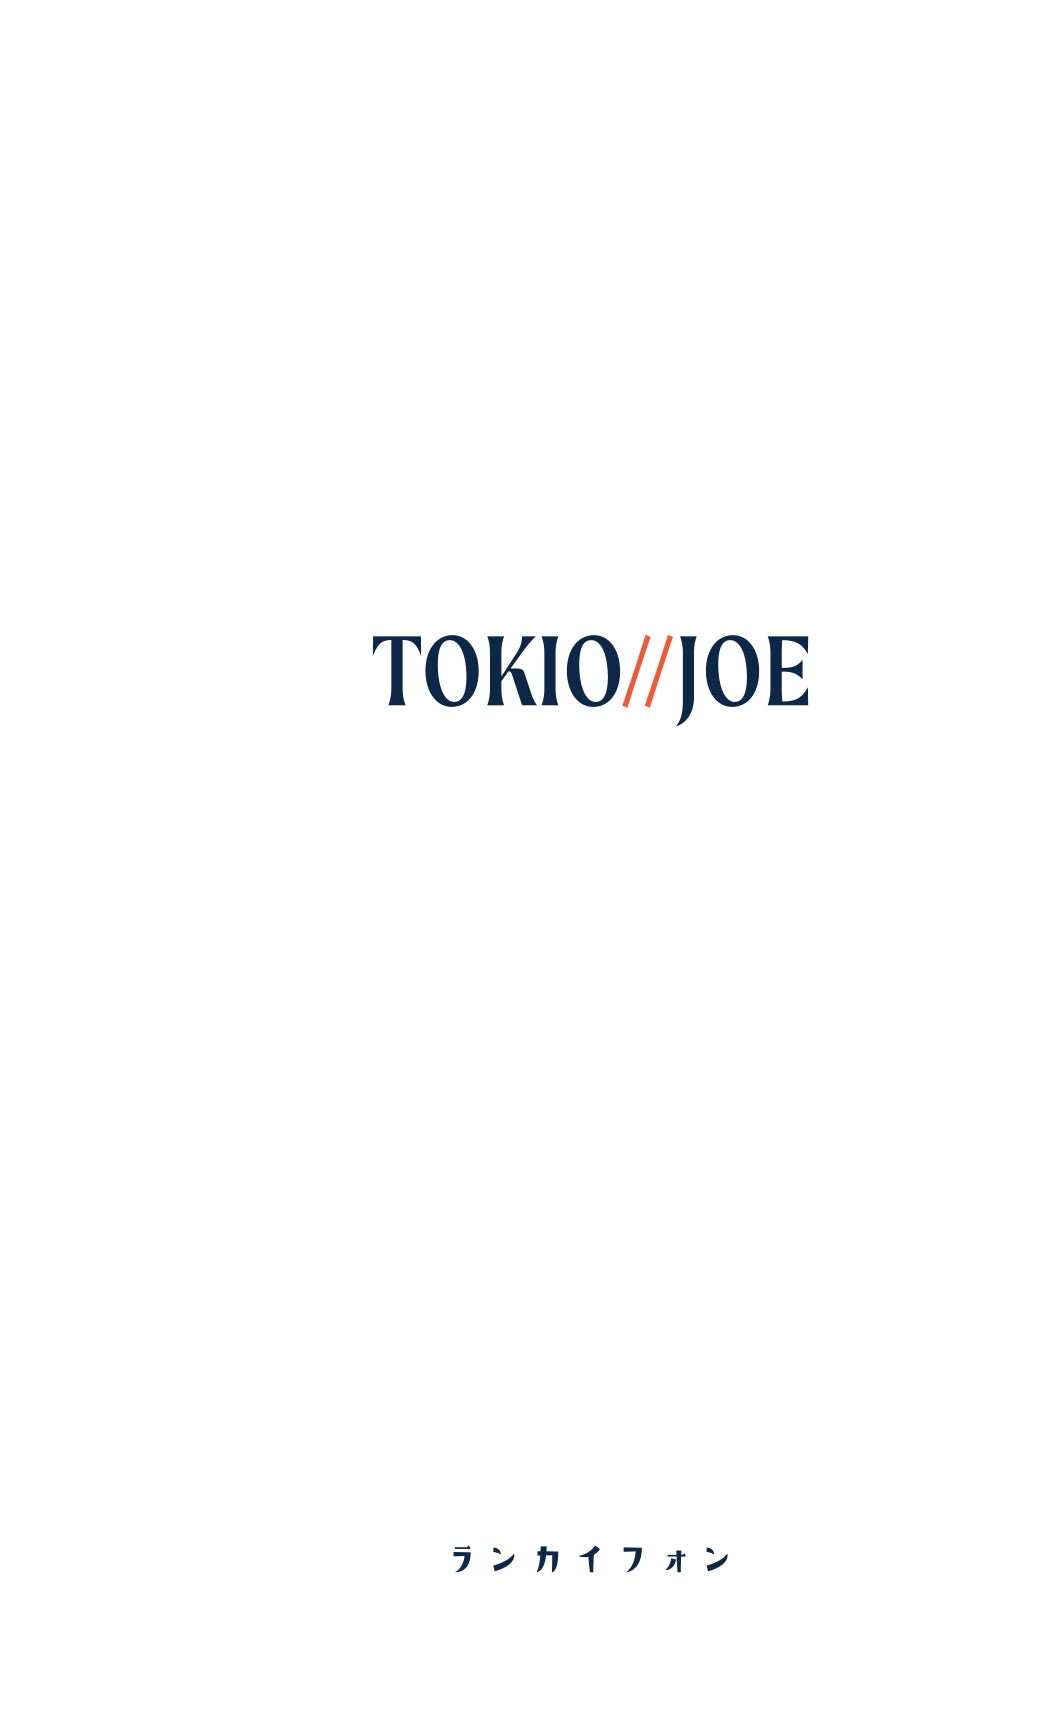 TOKIO JOE 主餐牌